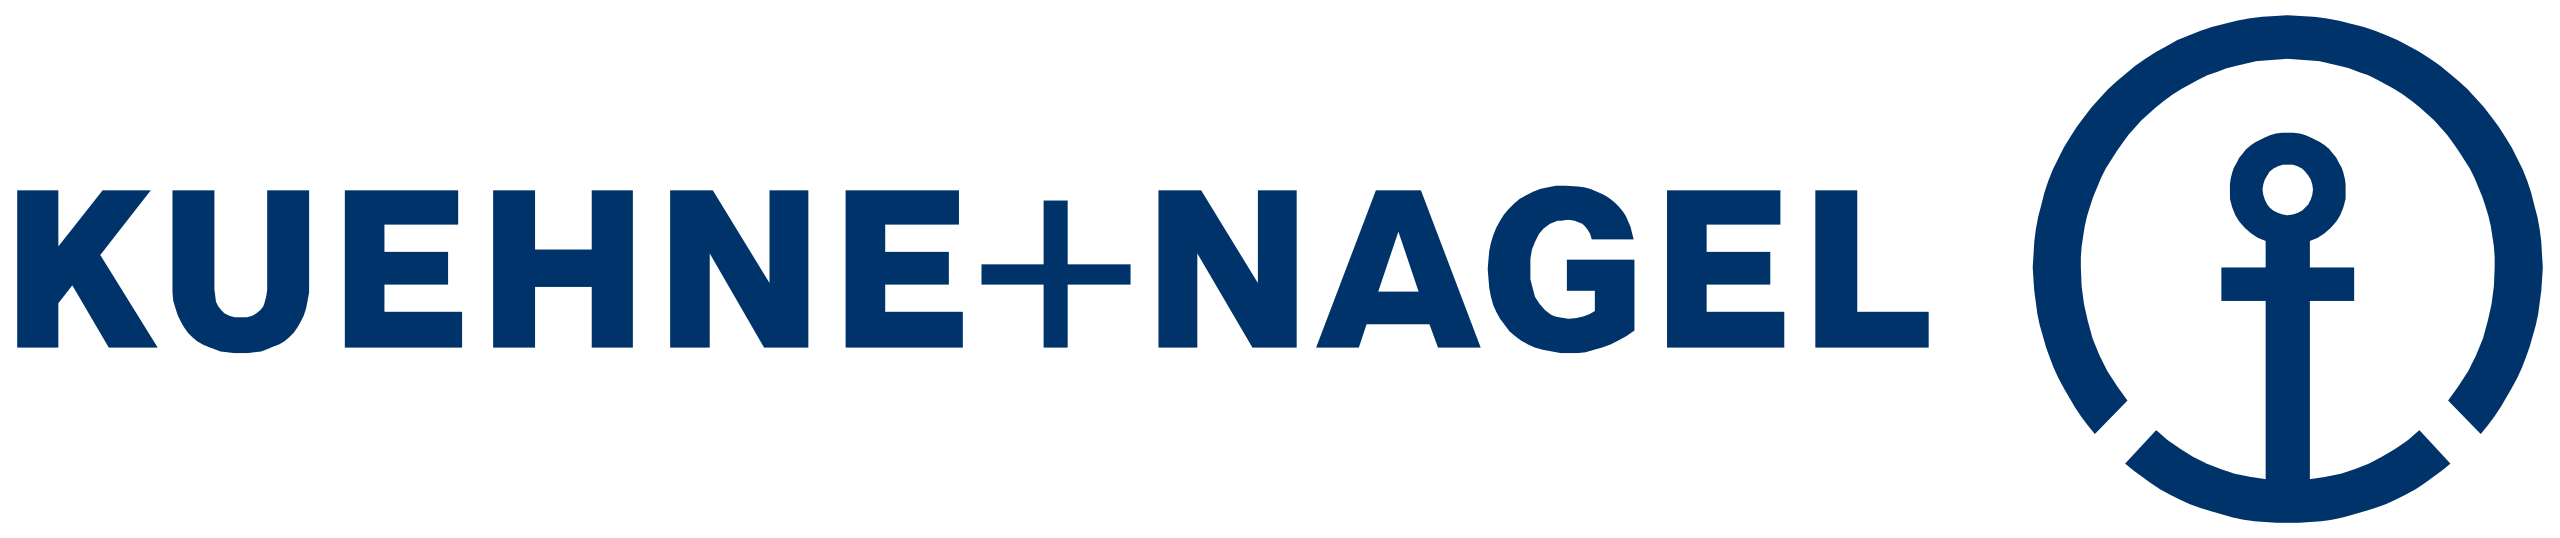 Kühne_+_Nagel_logo.svg